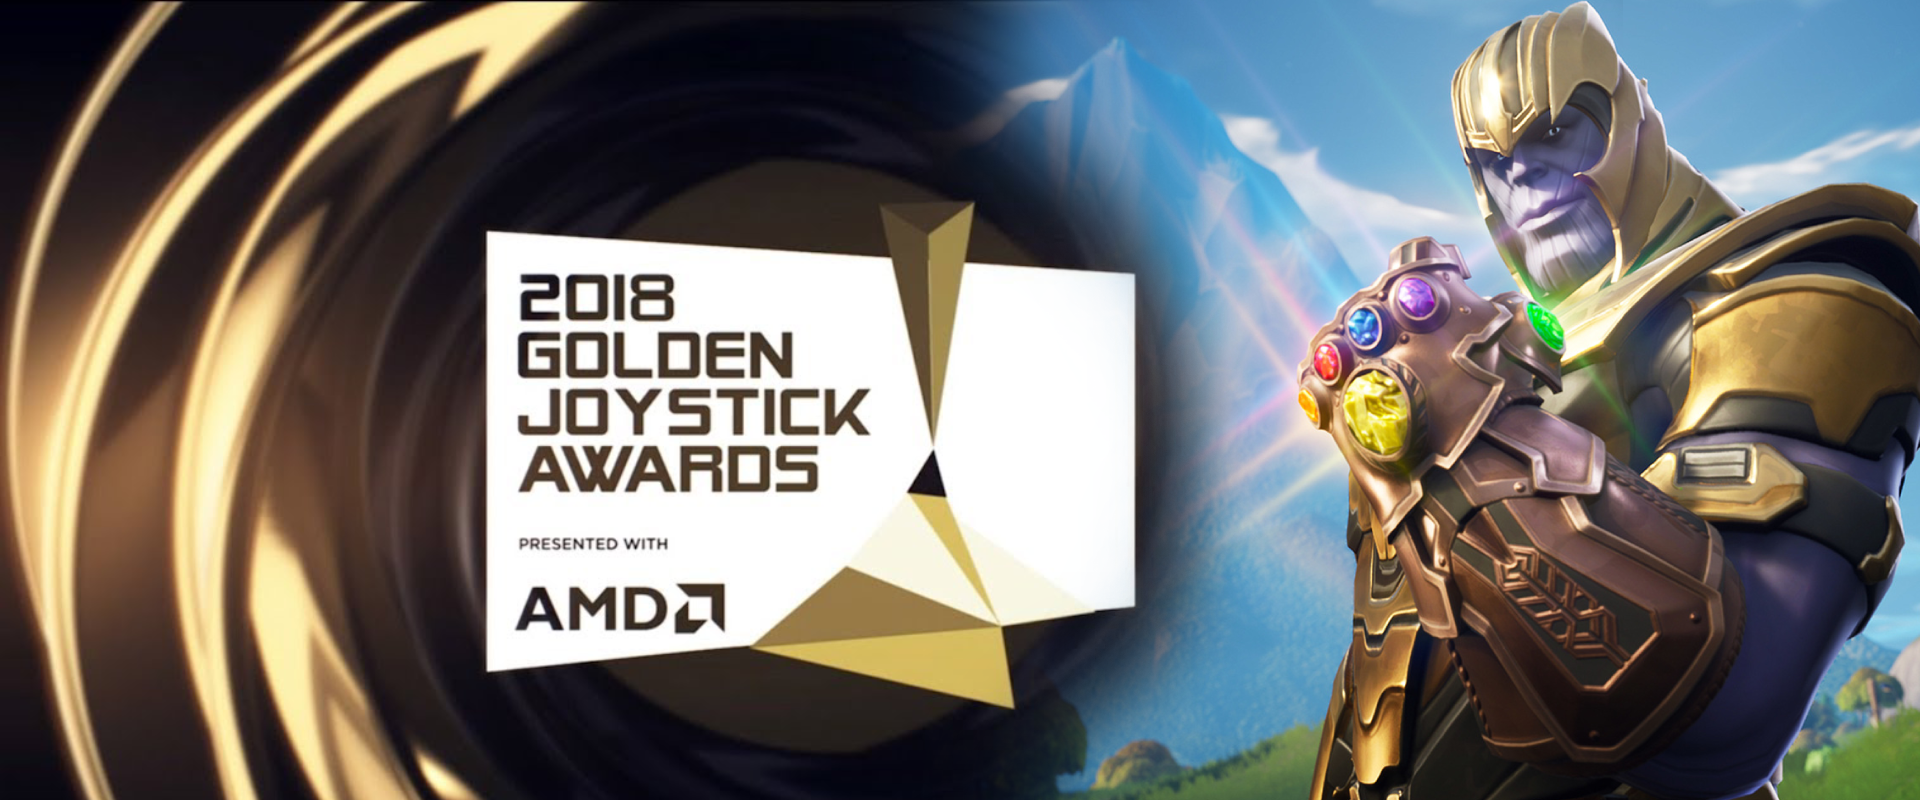 A Fortnite lett az év játéka! - Golden Joystick Awards 2018